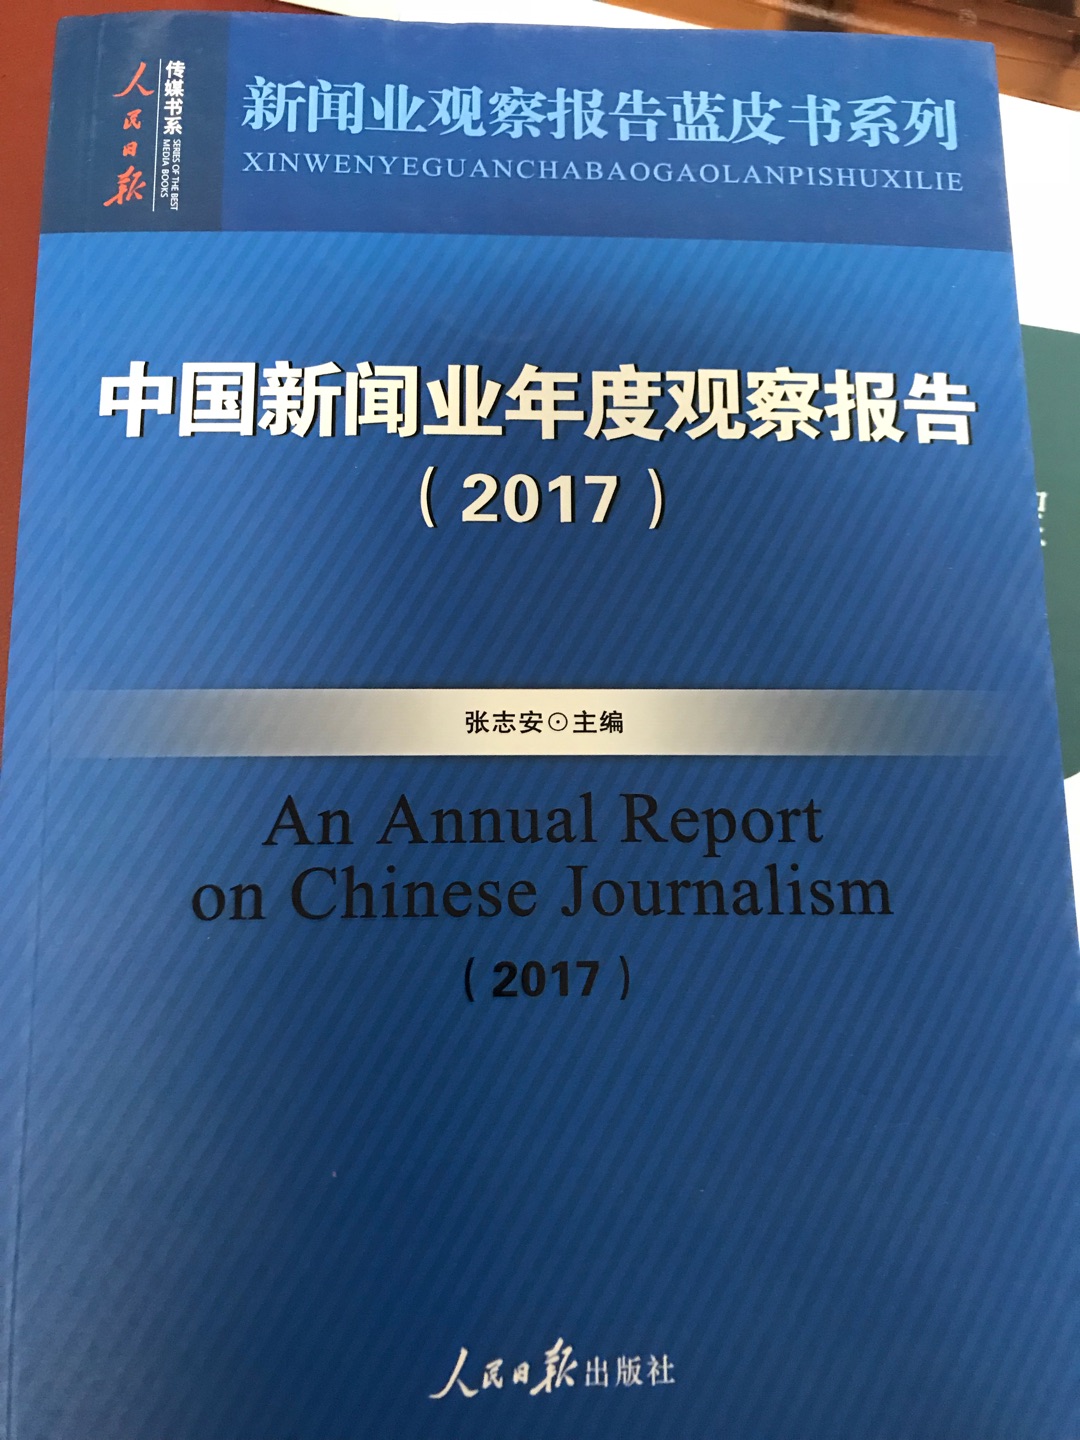 张志安老师带领中山大学团队做的，主要是2016年的总结。